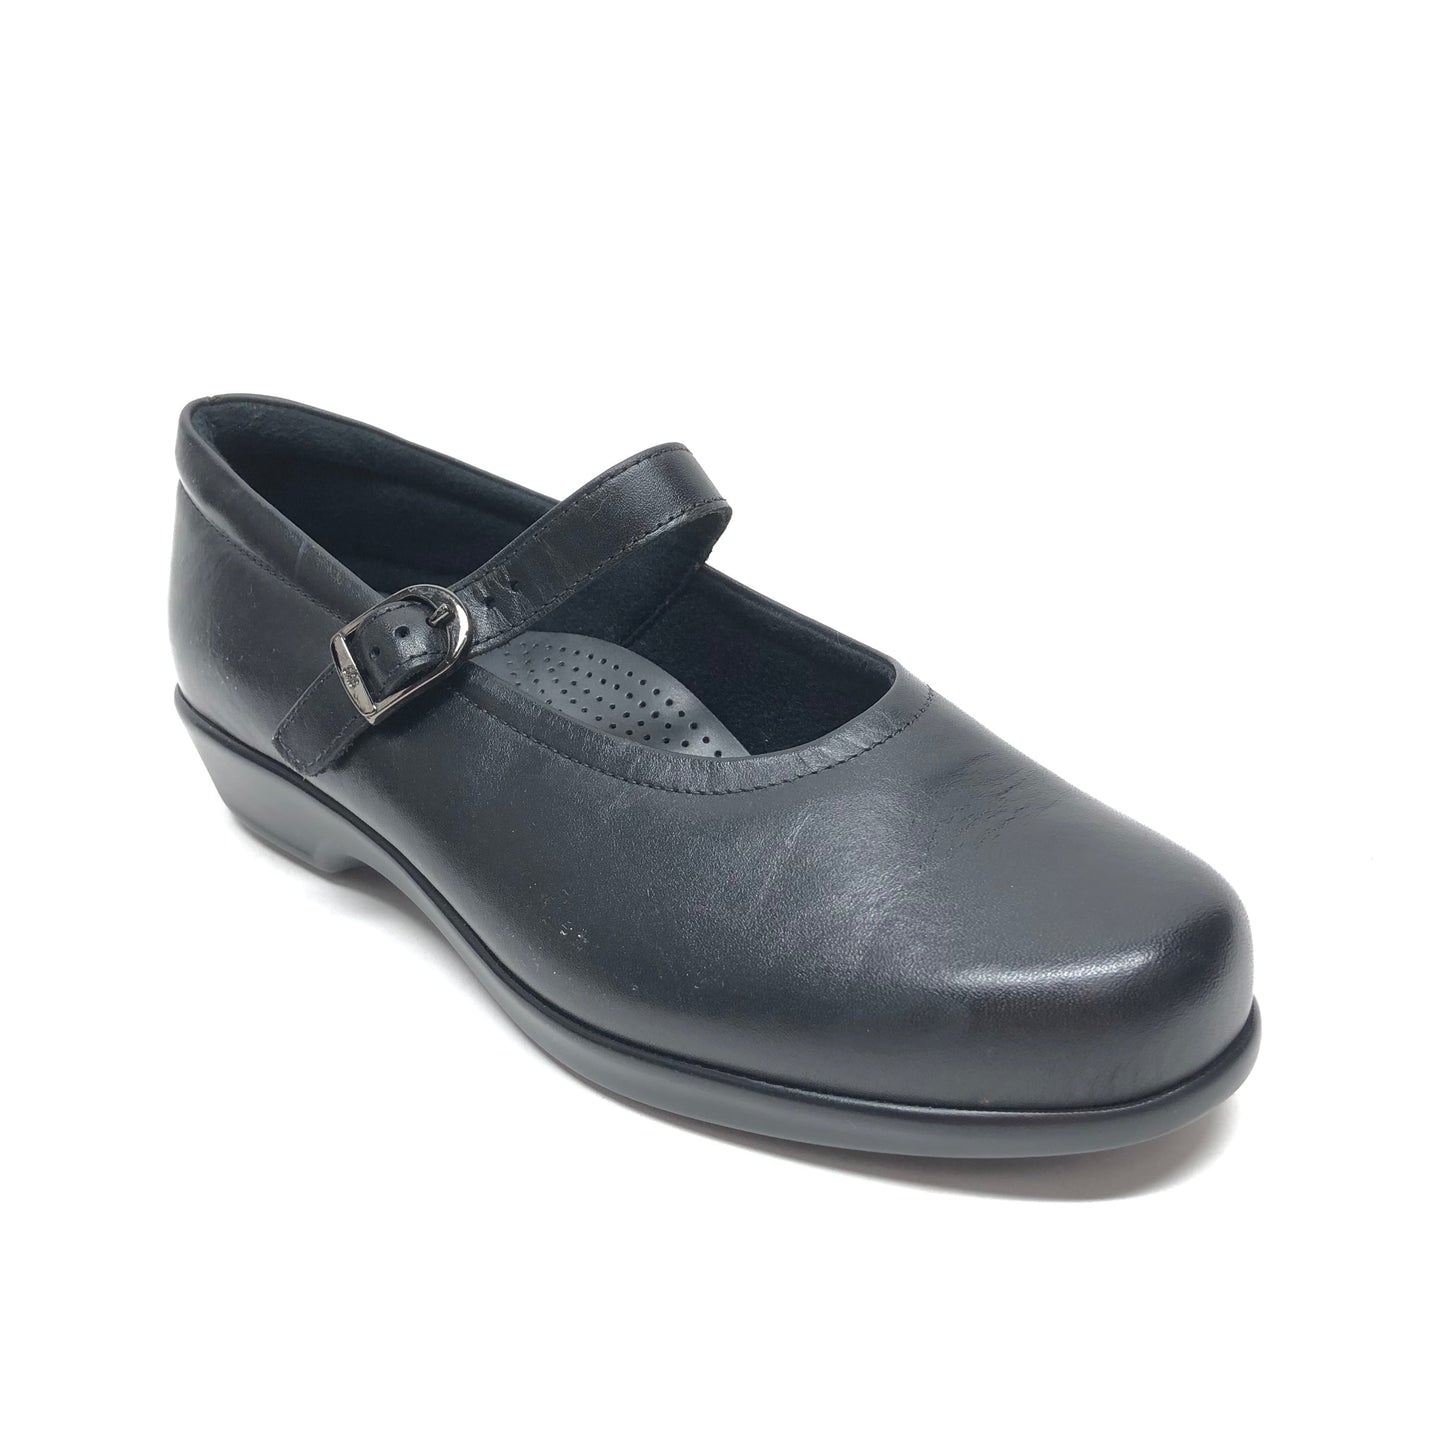 Black Shoes Flats Sas, Size 8